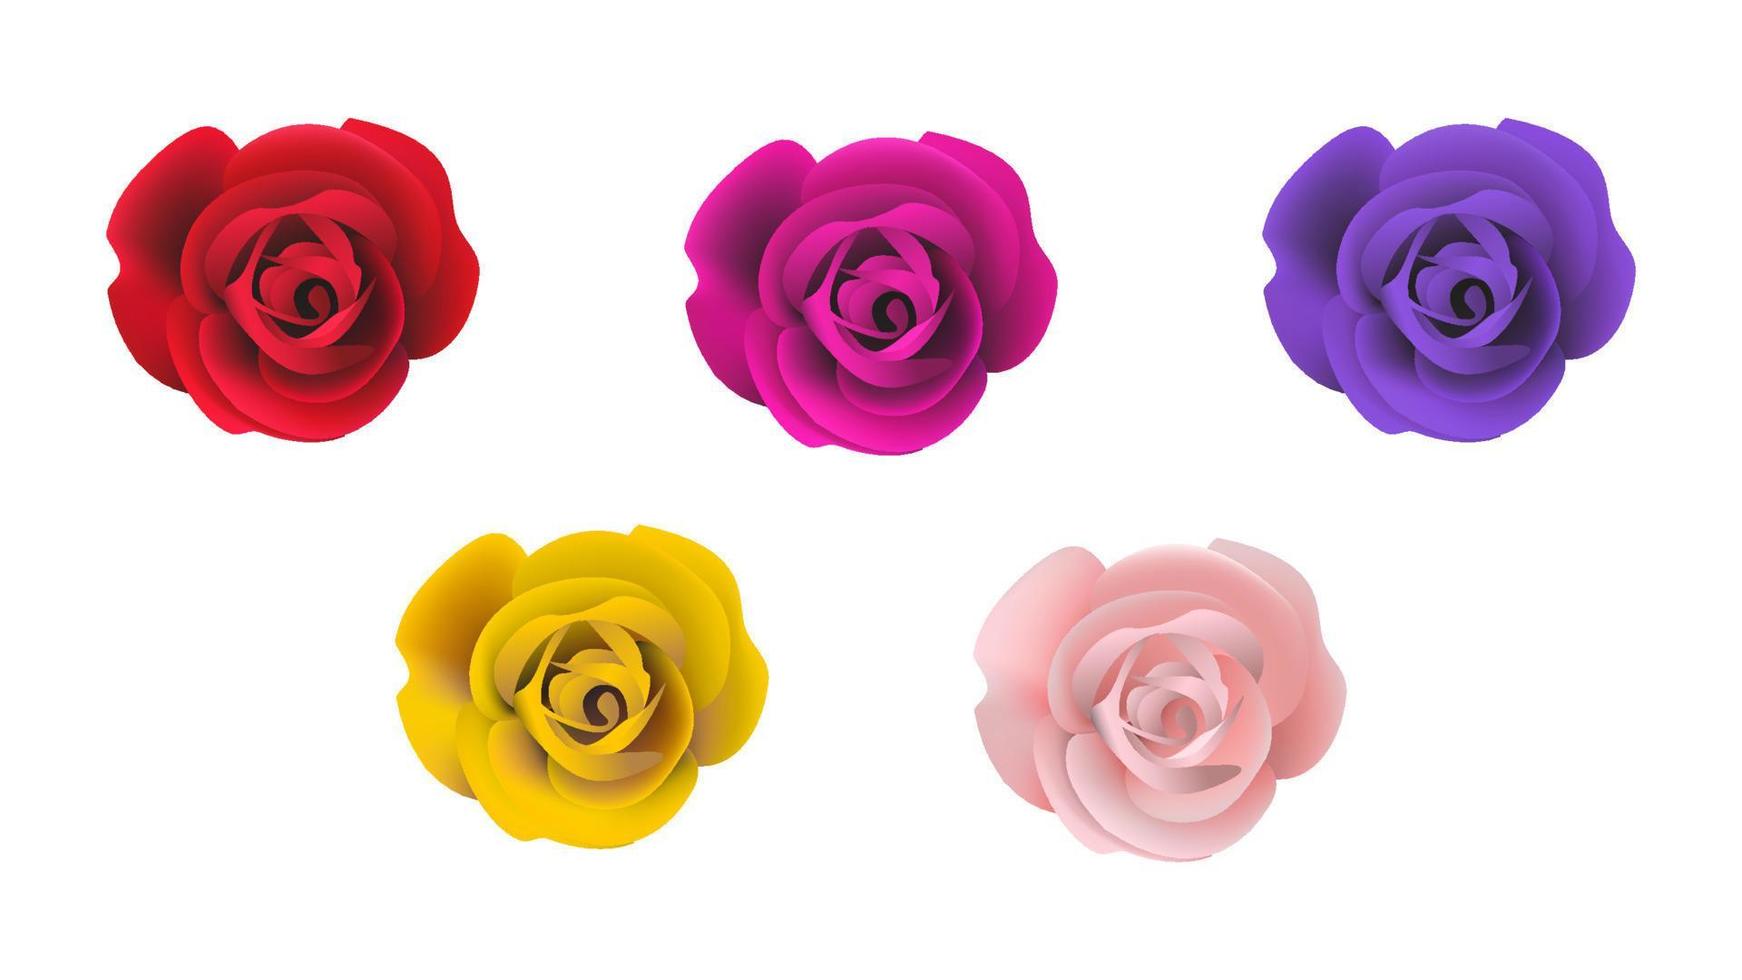 roses réalistes en plusieurs couleurs, illustration d'objet vecteur rose réaliste sur fond blanc.